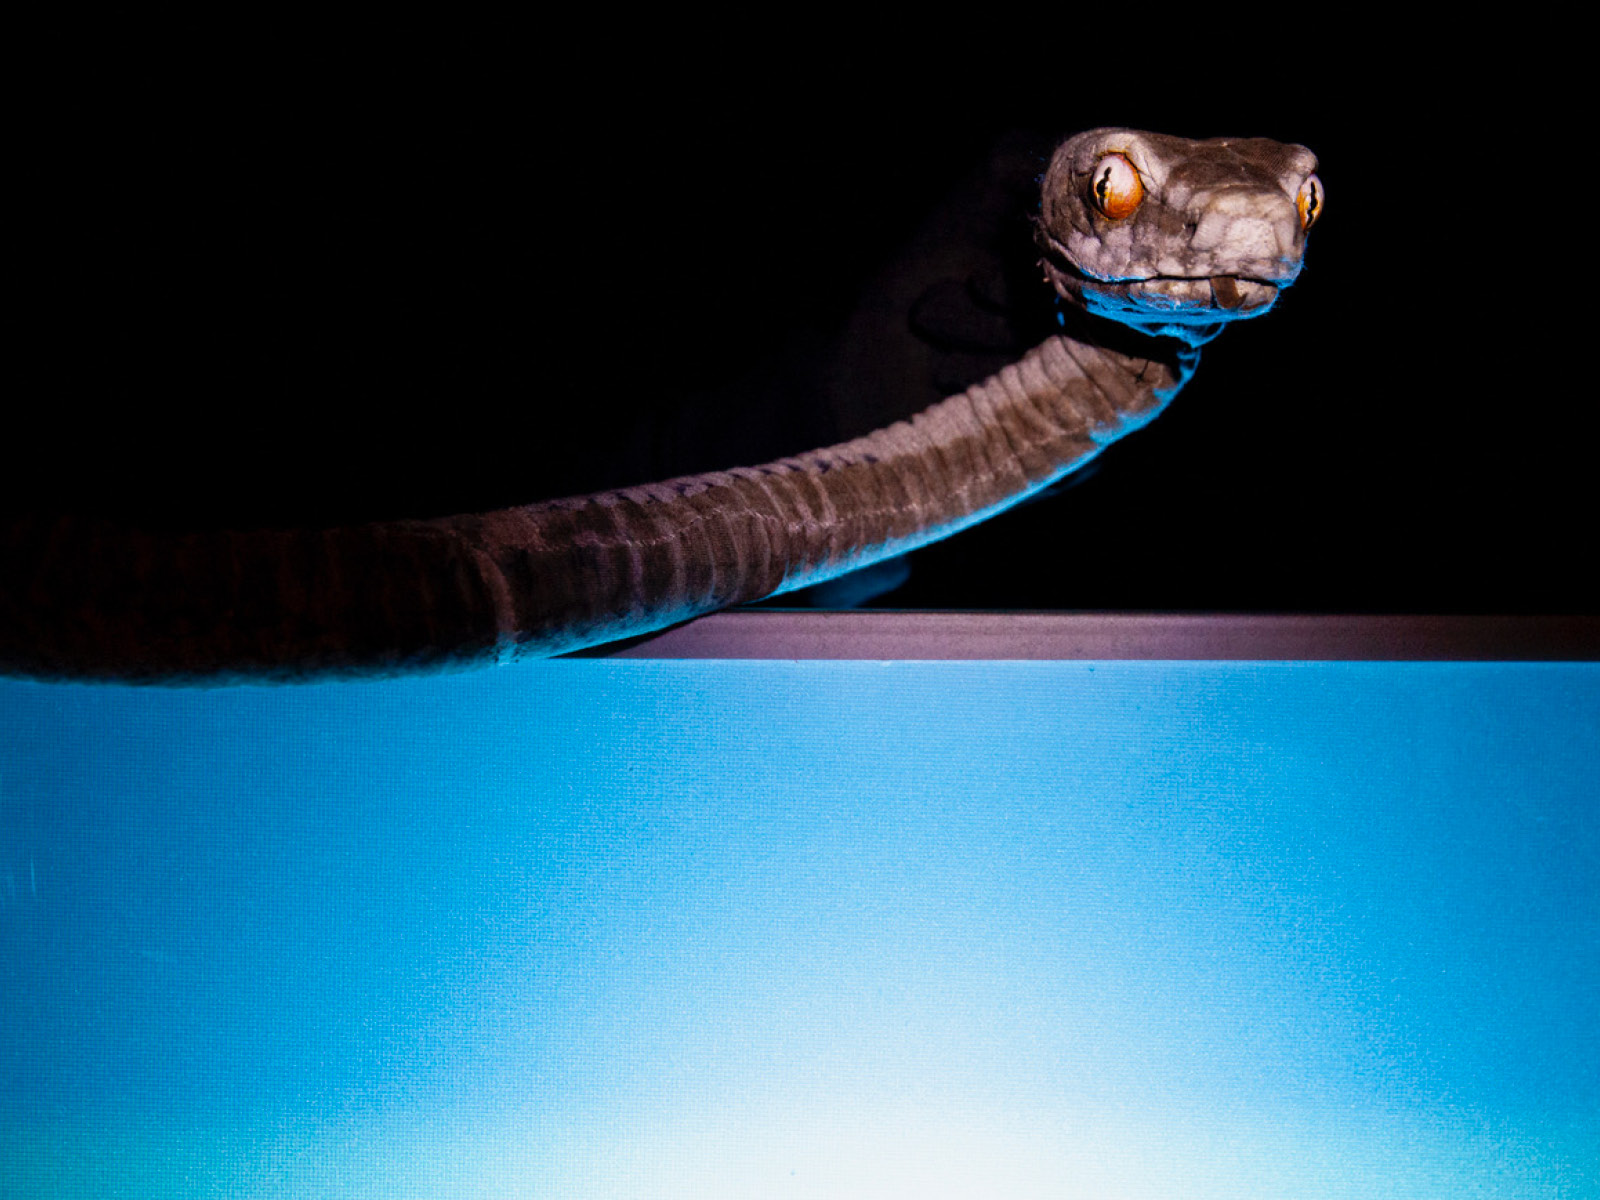 Klappmaulpuppe der Otter-Schlange, deren Kopf und Oberkörper von einem blau-weißen Spotlight beleuchtet werden, während ihre geschlitzten Pupillen und gelben Augen halb zugewandt zu den Betrachtenden schauen.